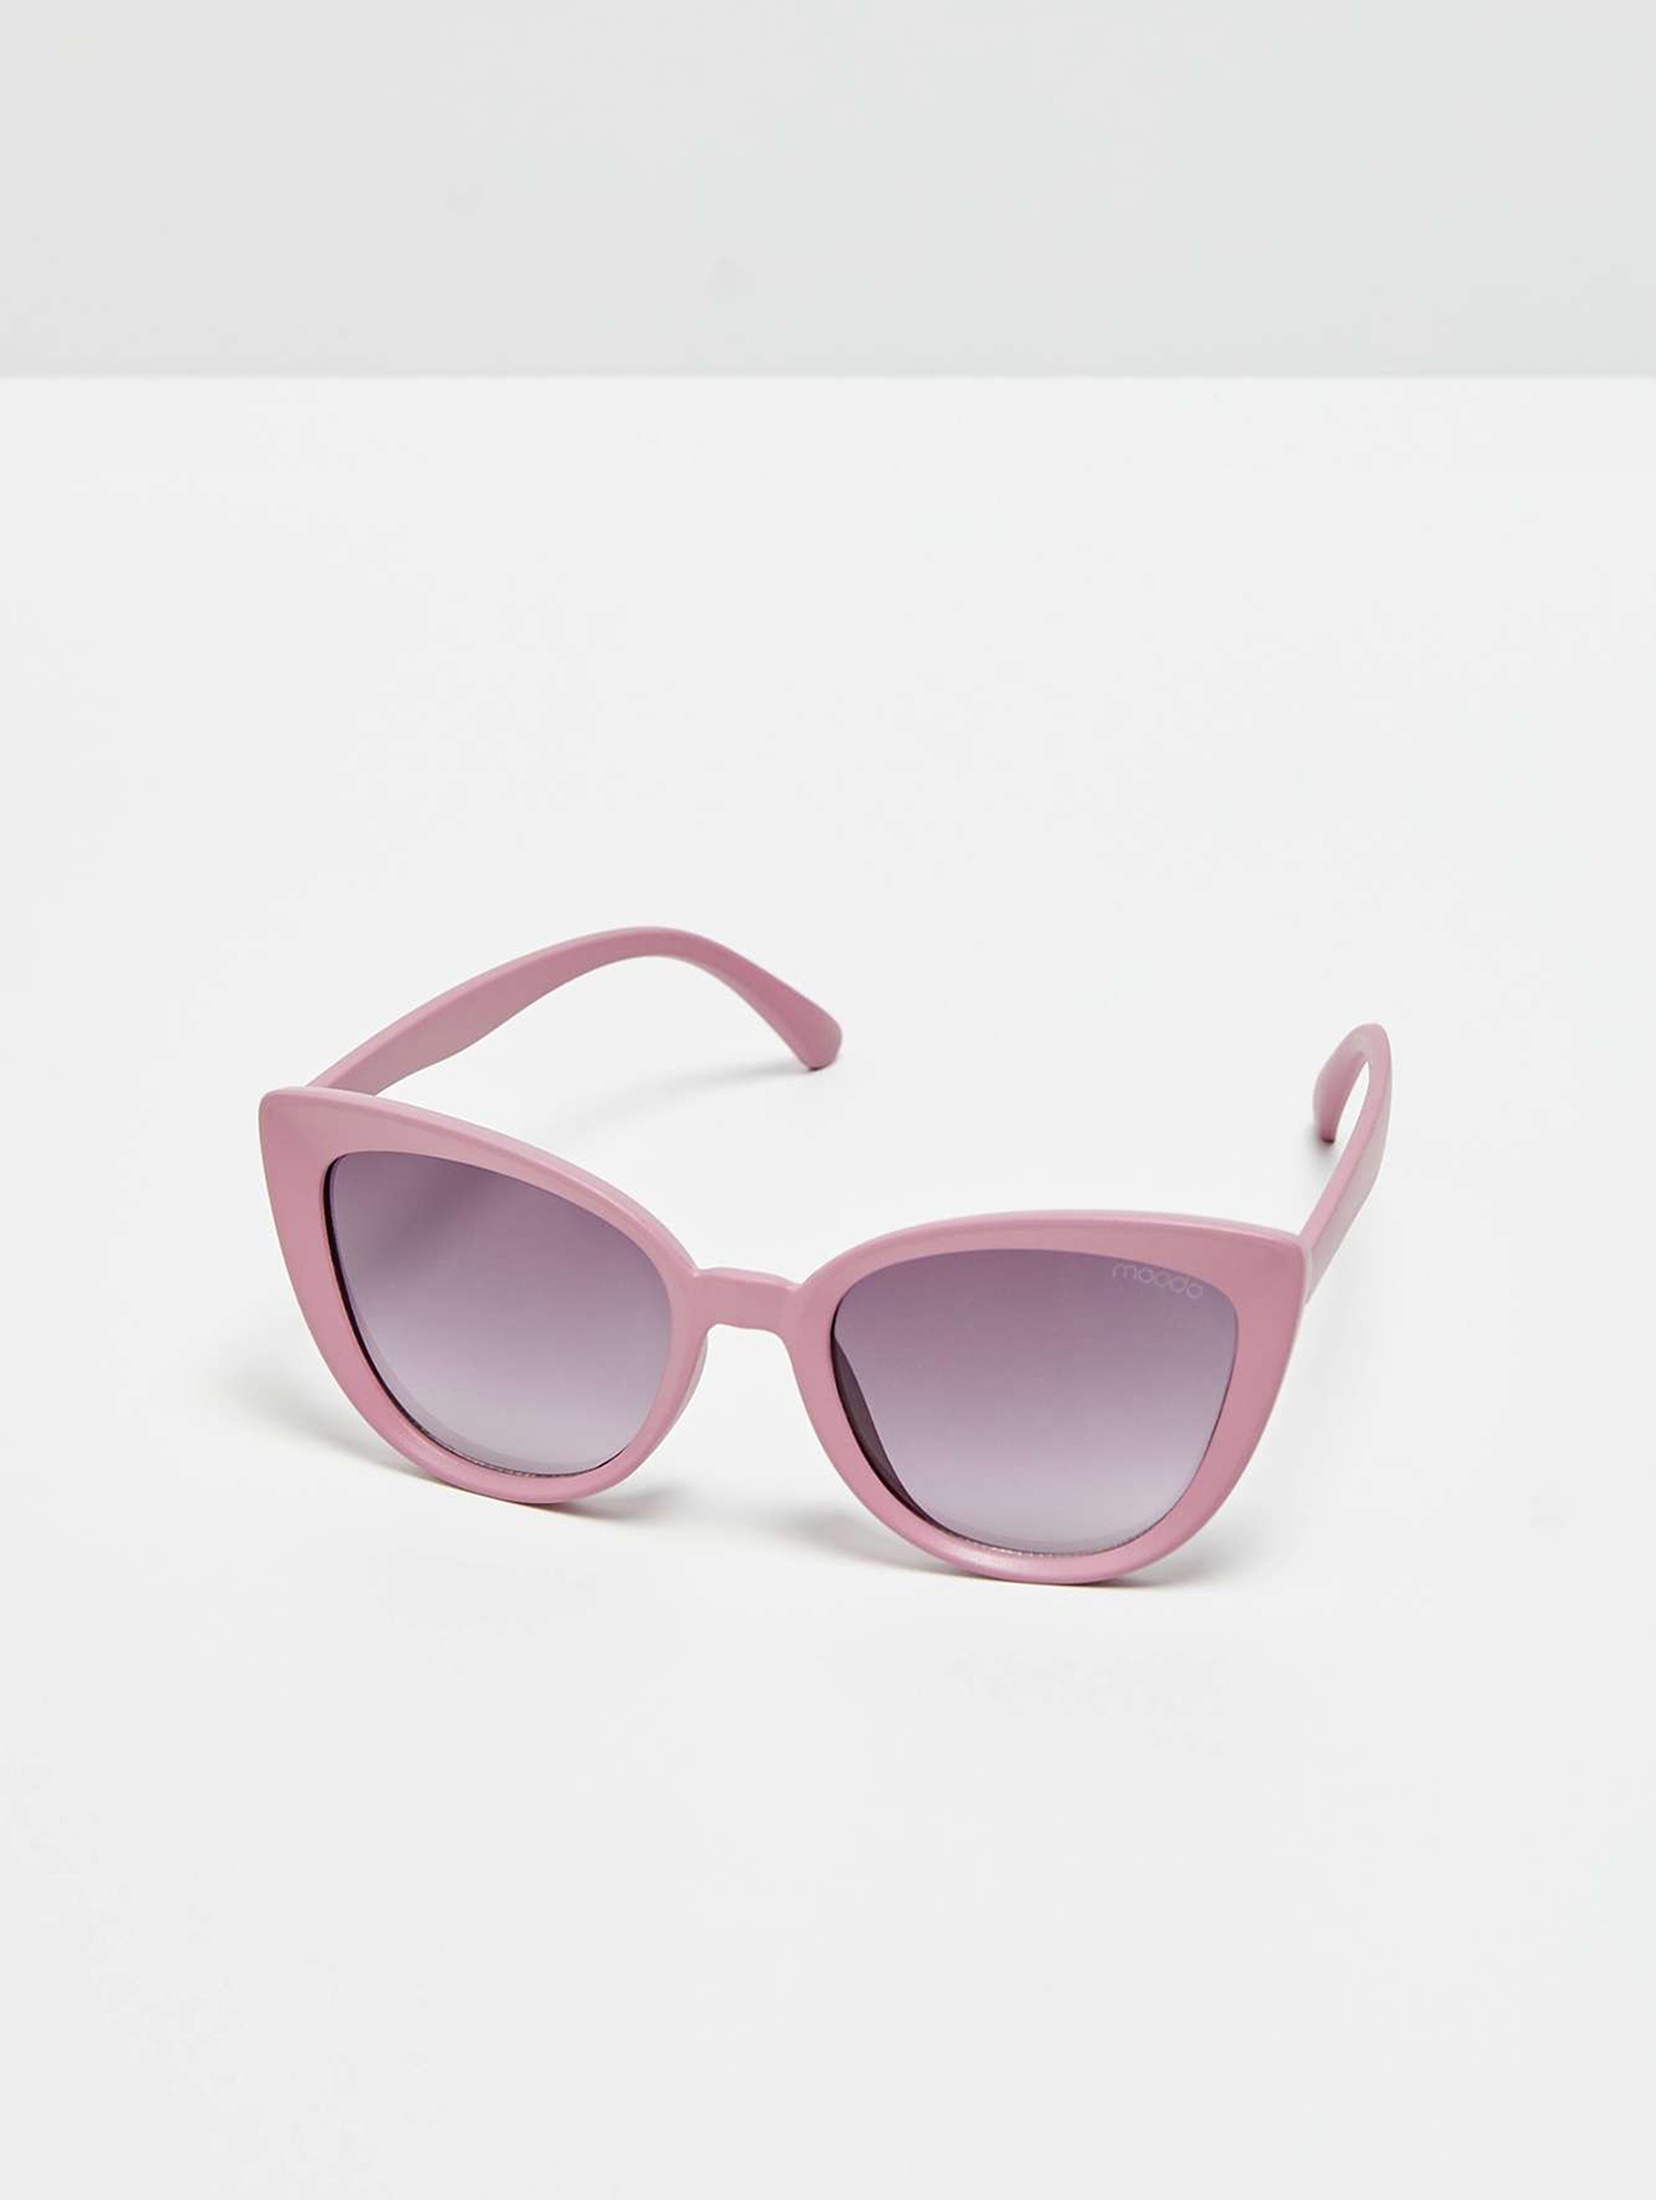 Okulary przeciwsłoneczne typu kocie oko - różowe